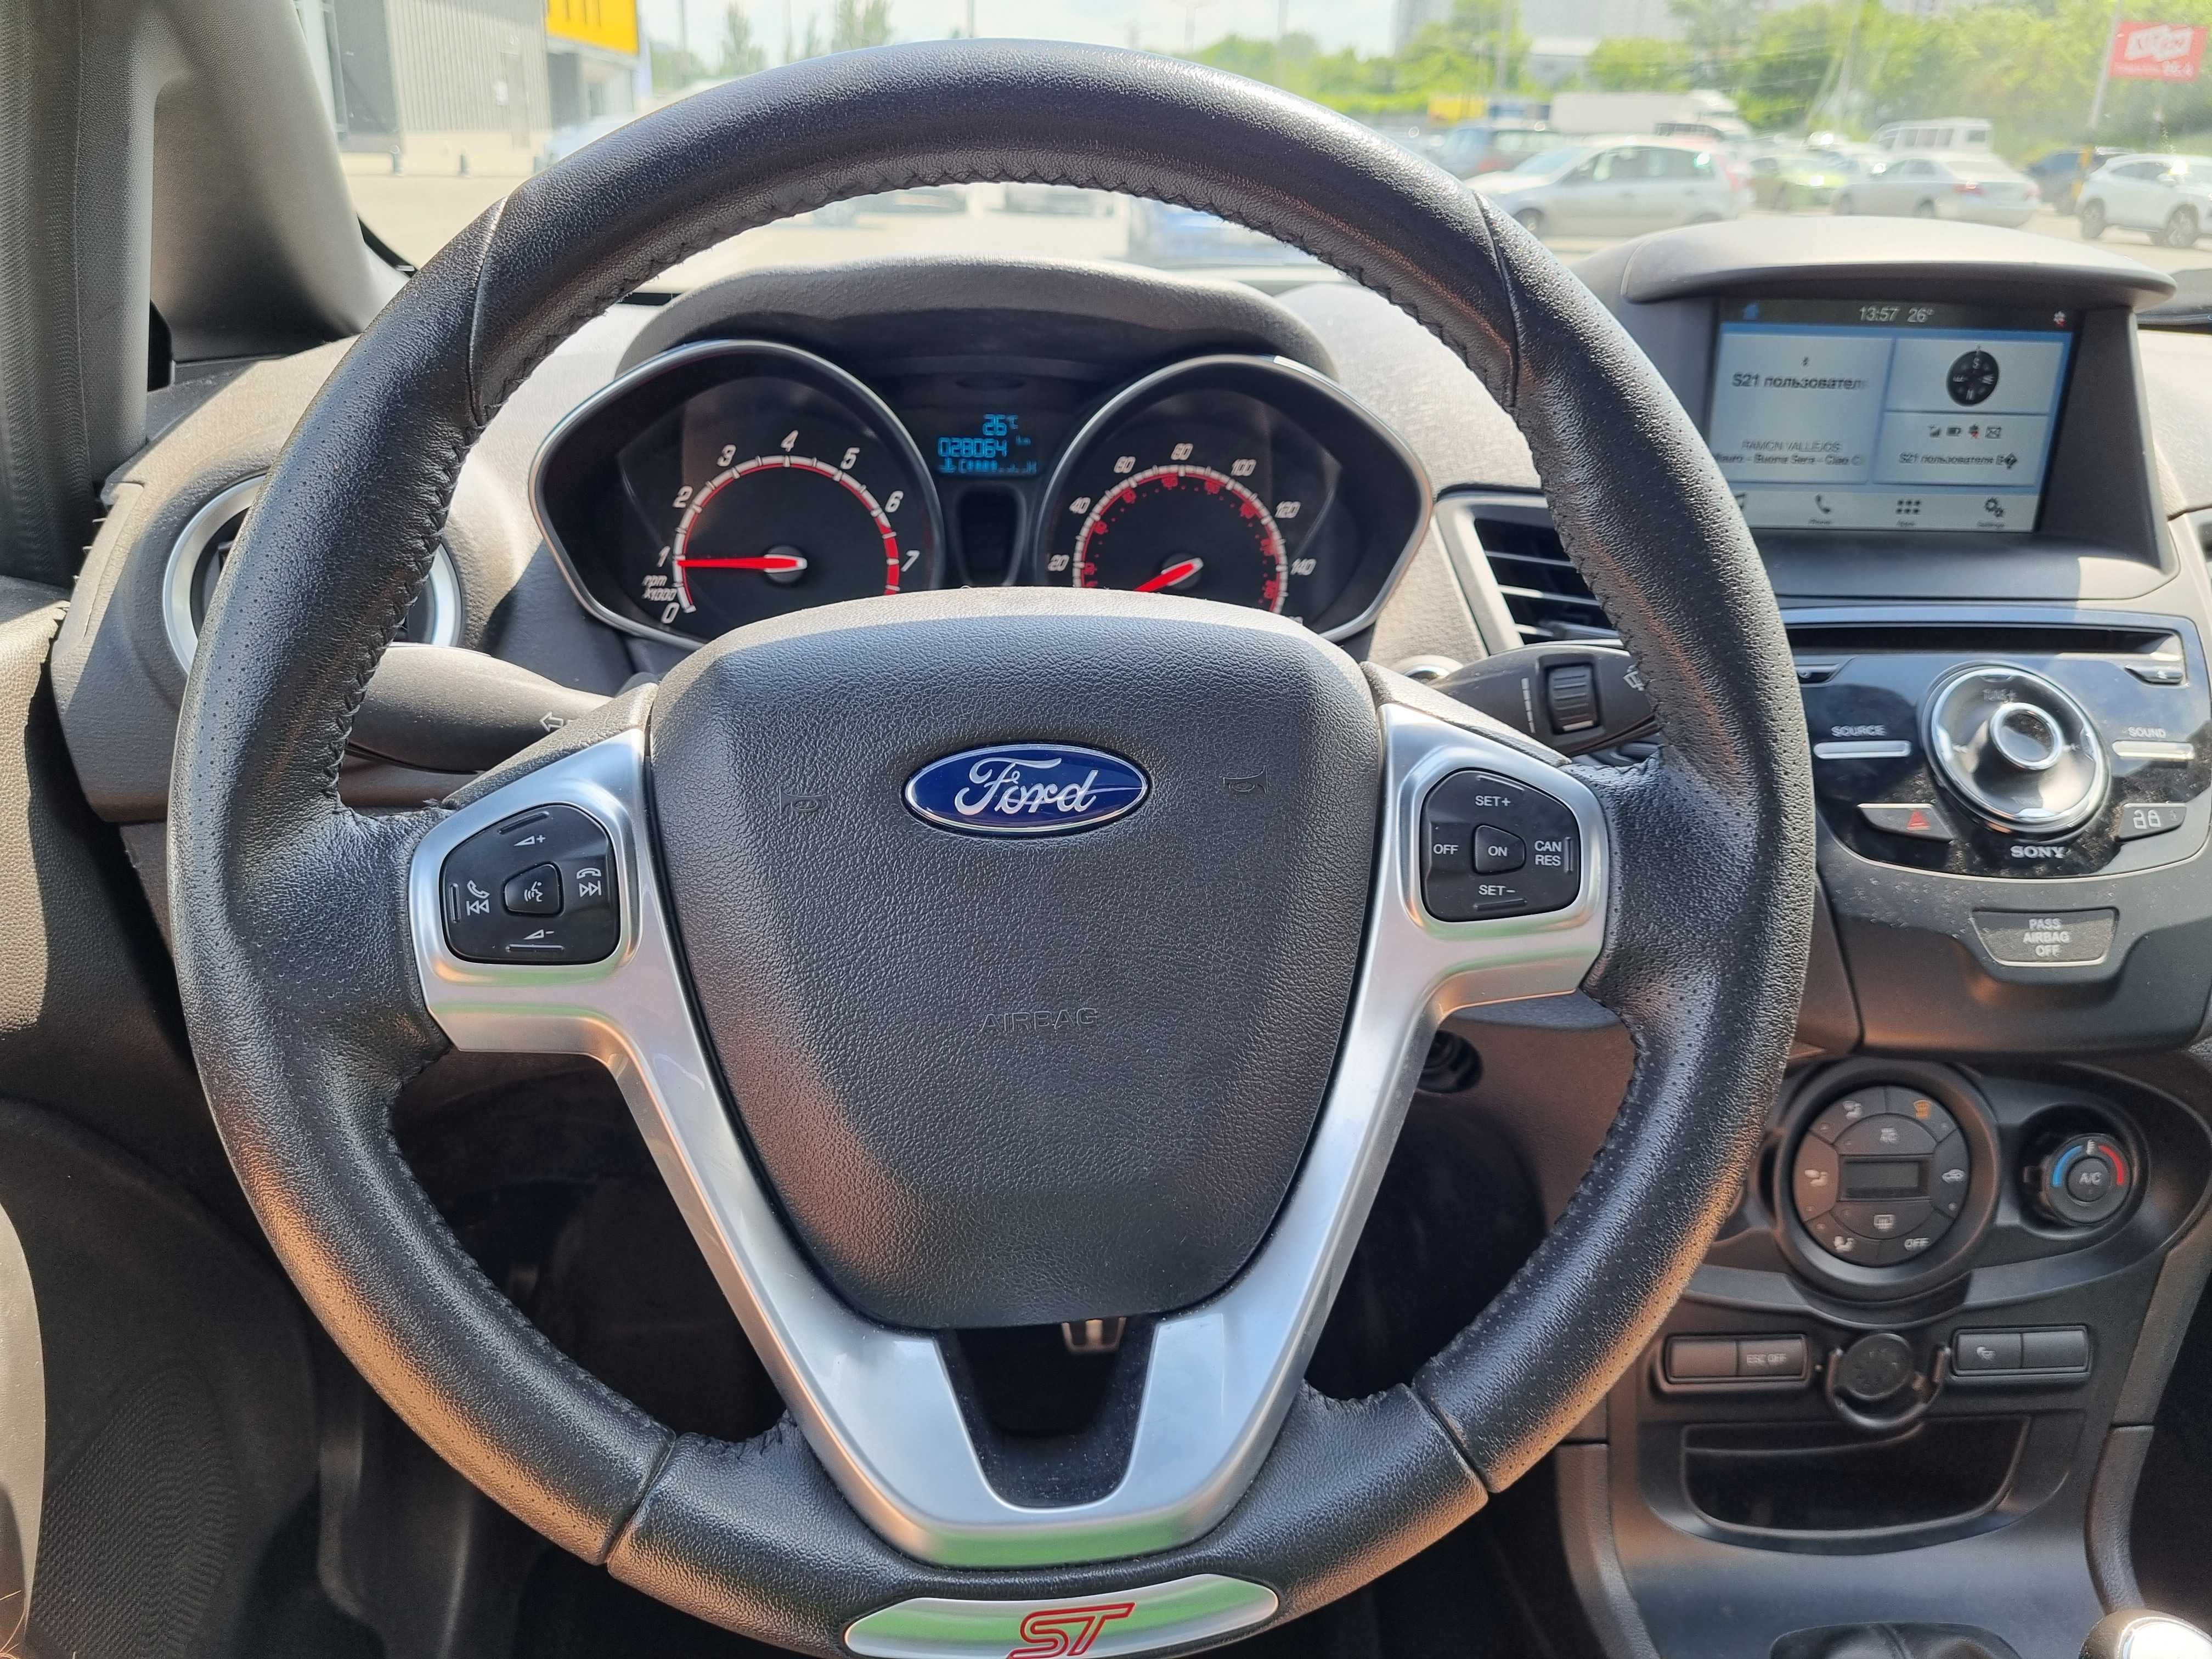 Ford Fiesta st 2019